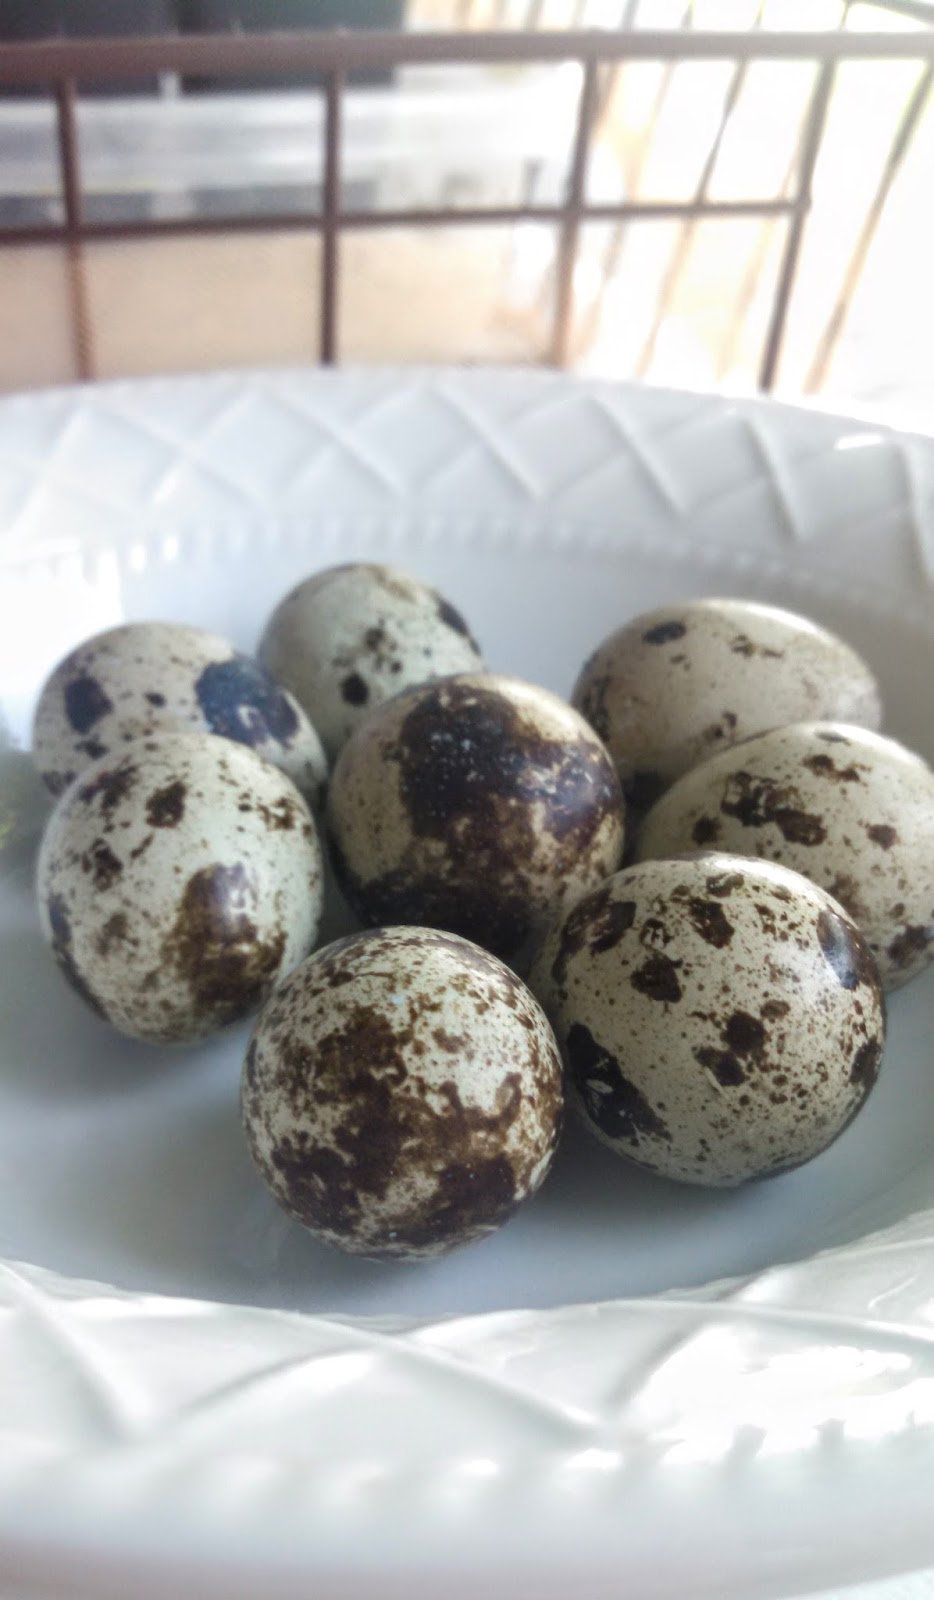 The Percolator Quail Eggs Benedict